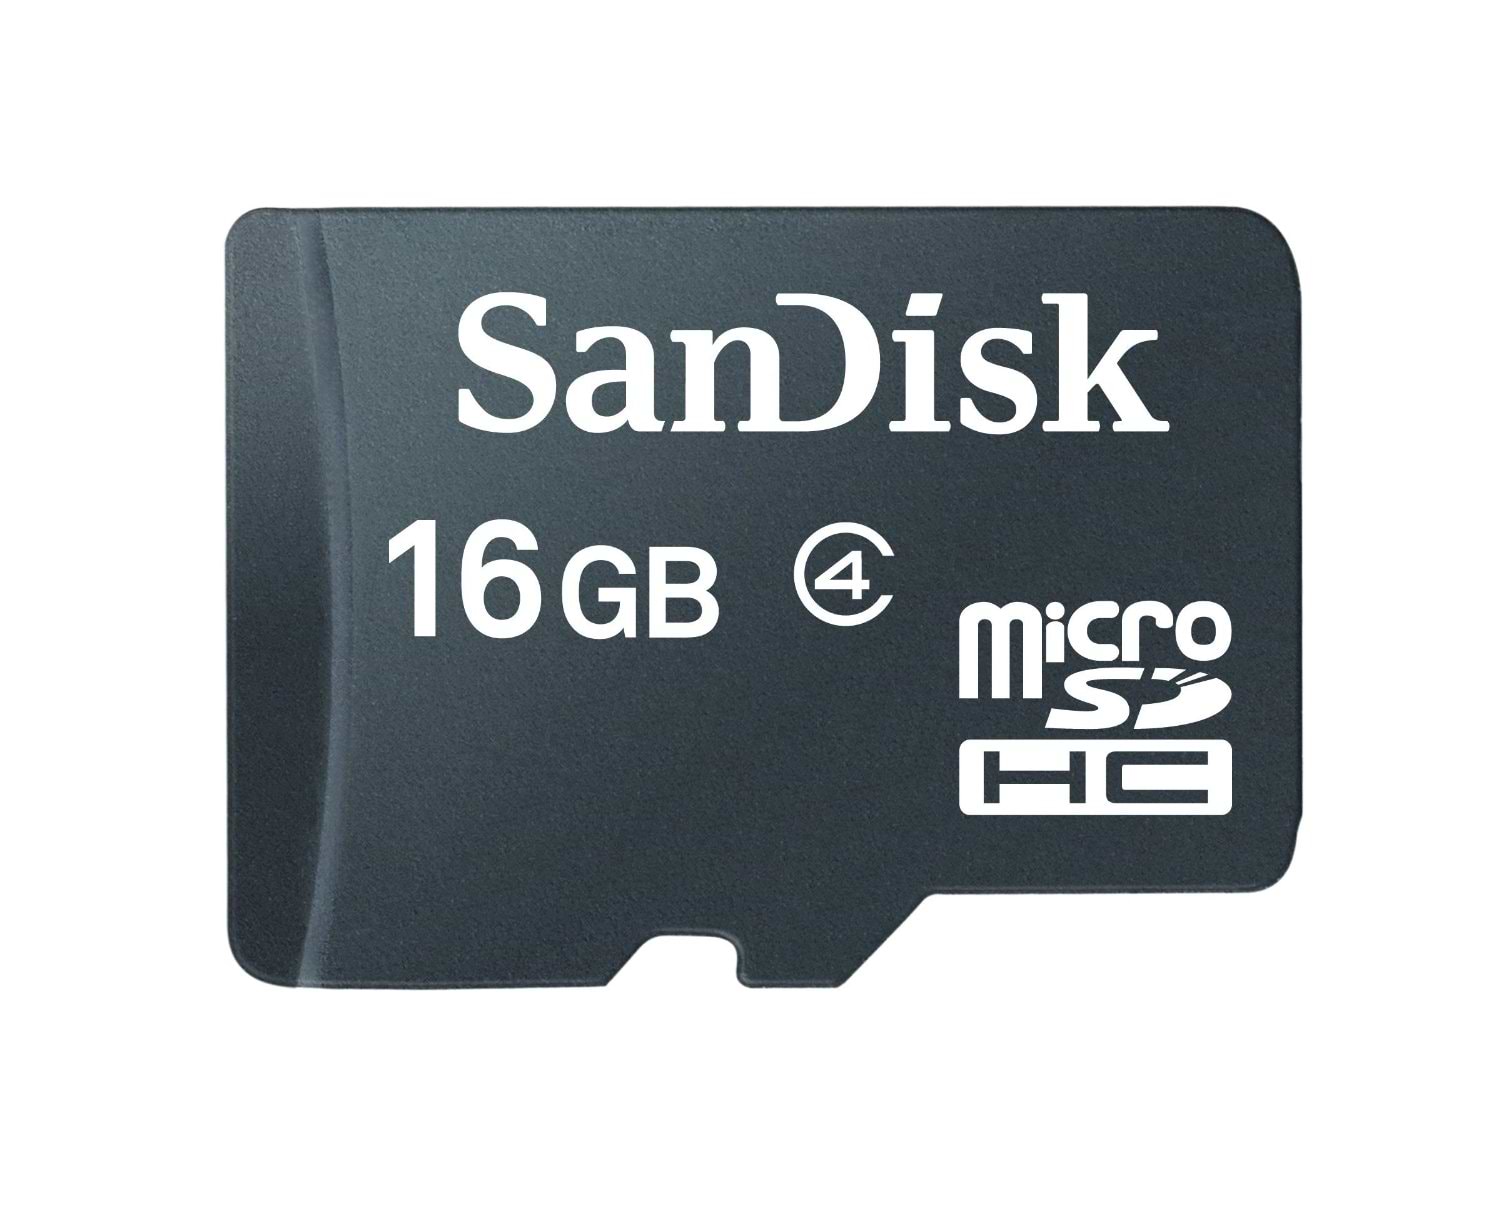 כרטיס זיכרון בנפח SanDisk Micro SD 16GB - חמש שנות אחריות ע